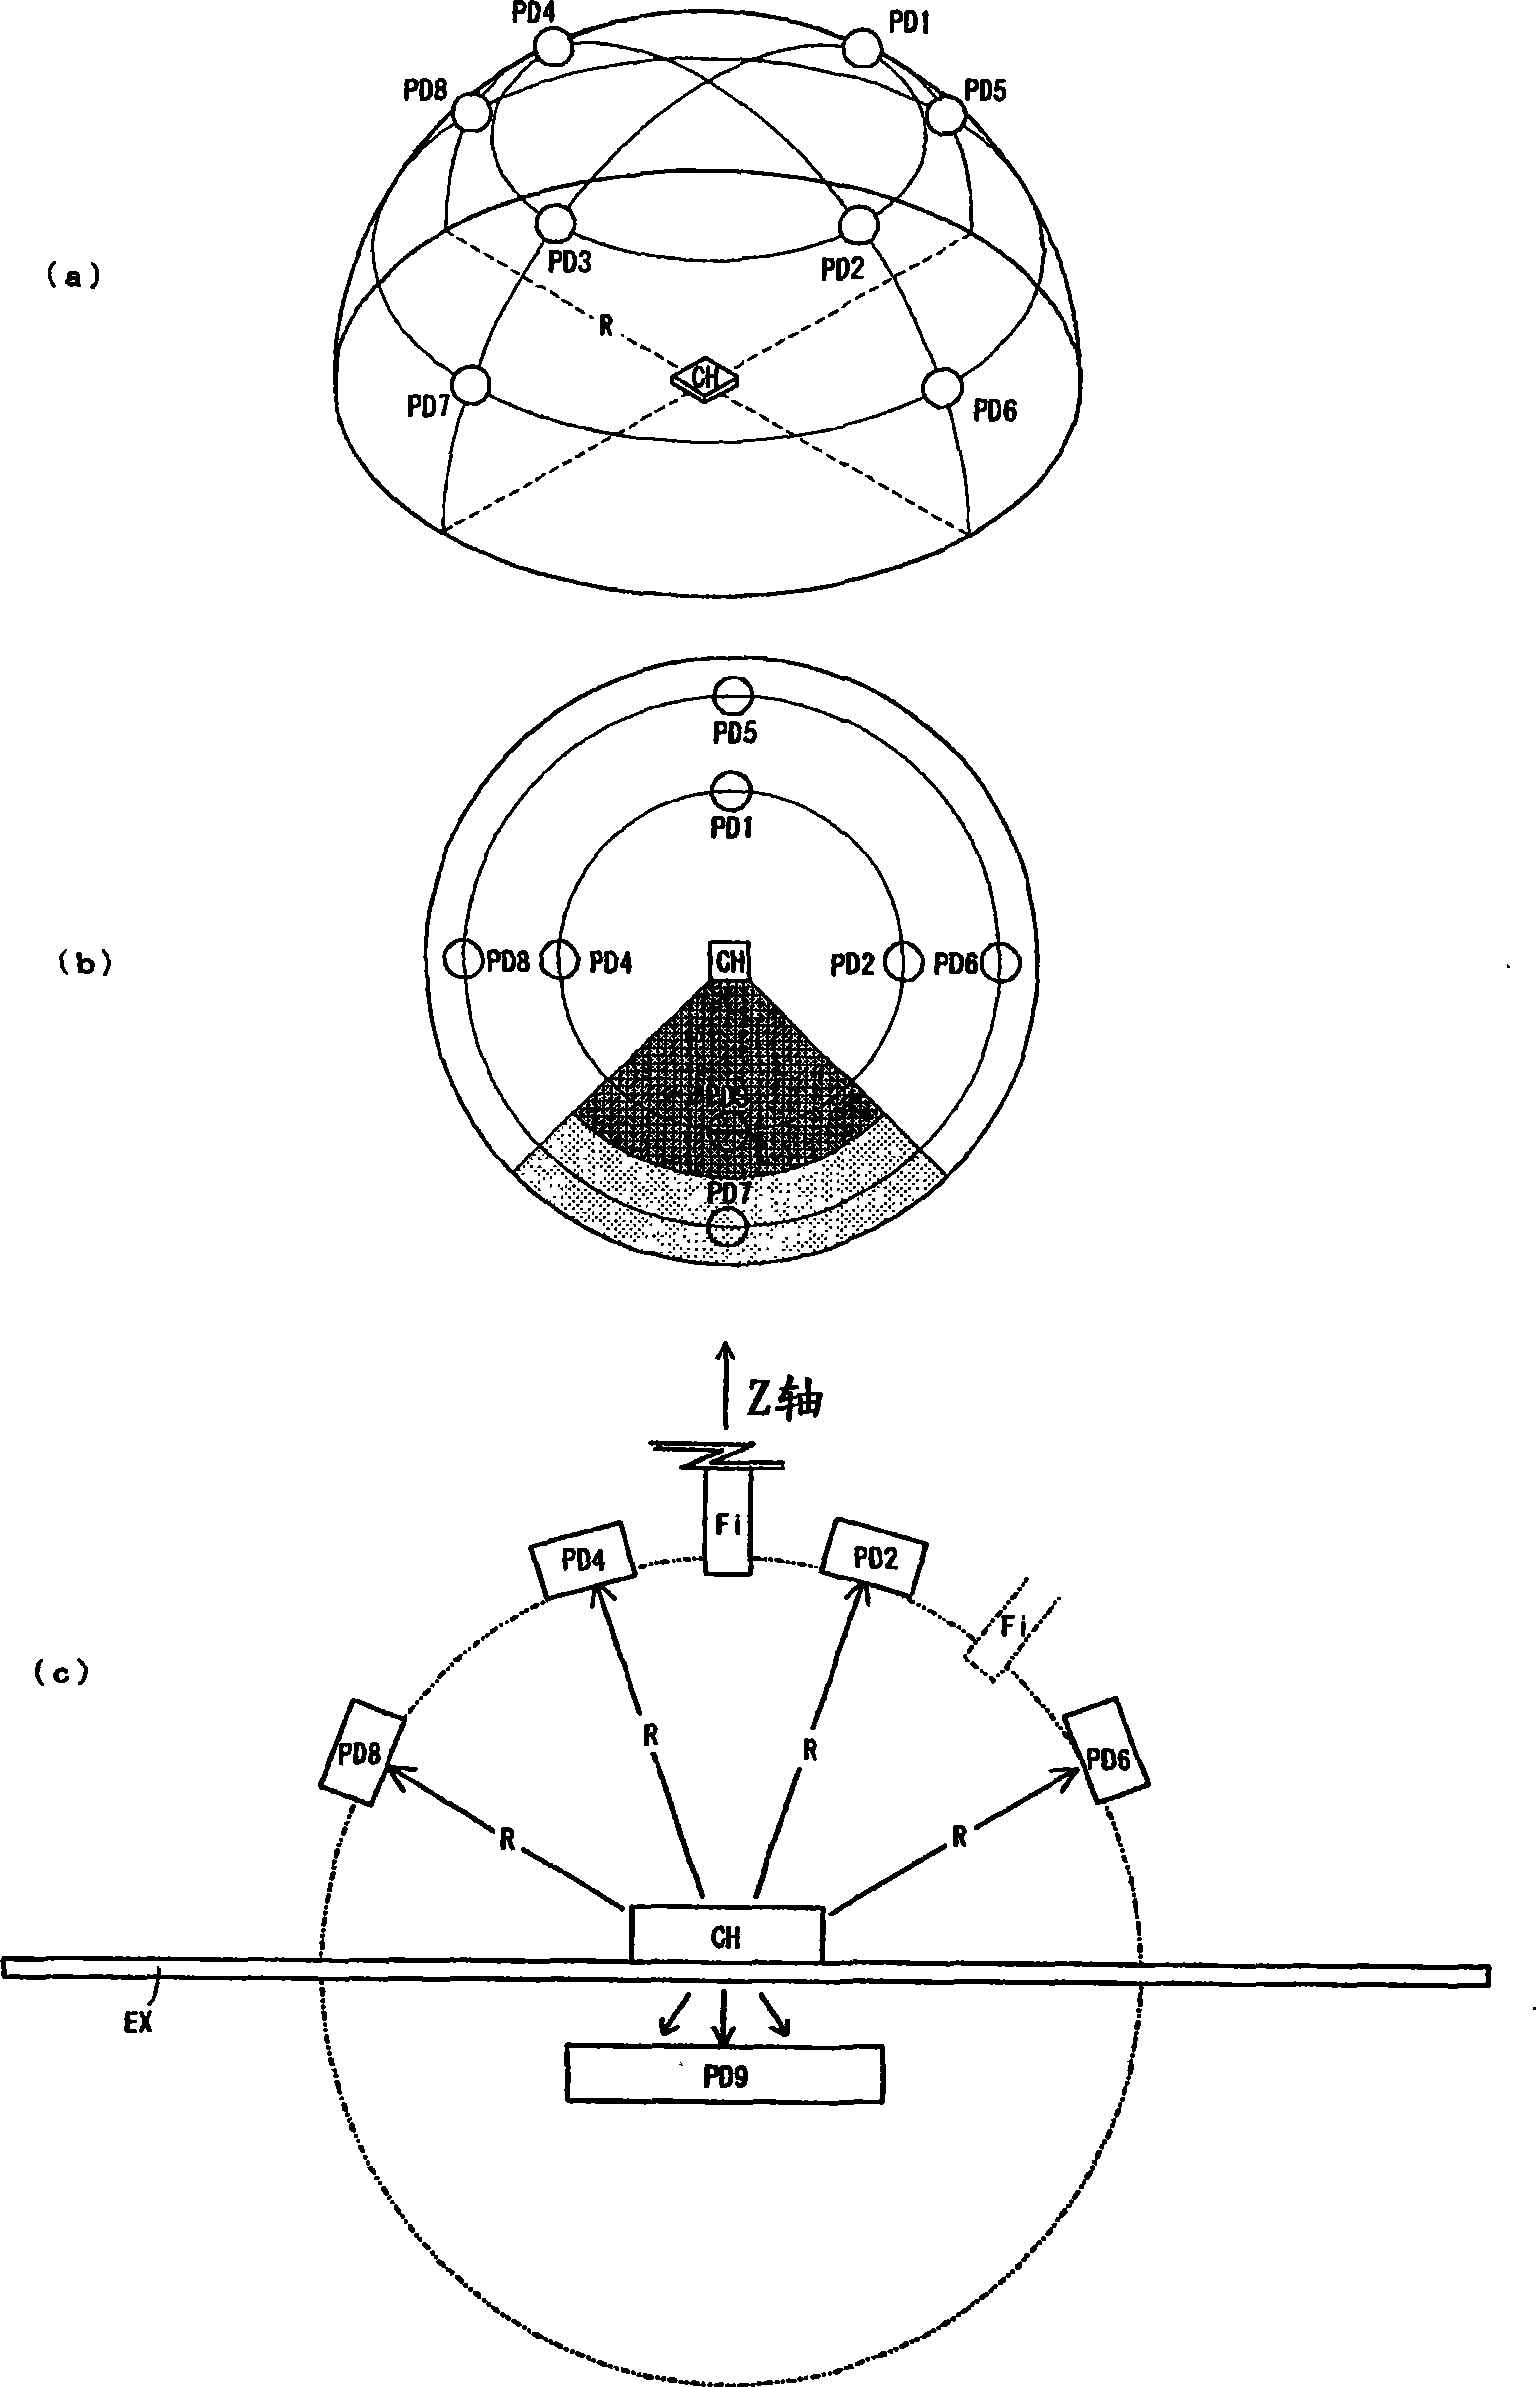 Photometry apparatus of luminophor